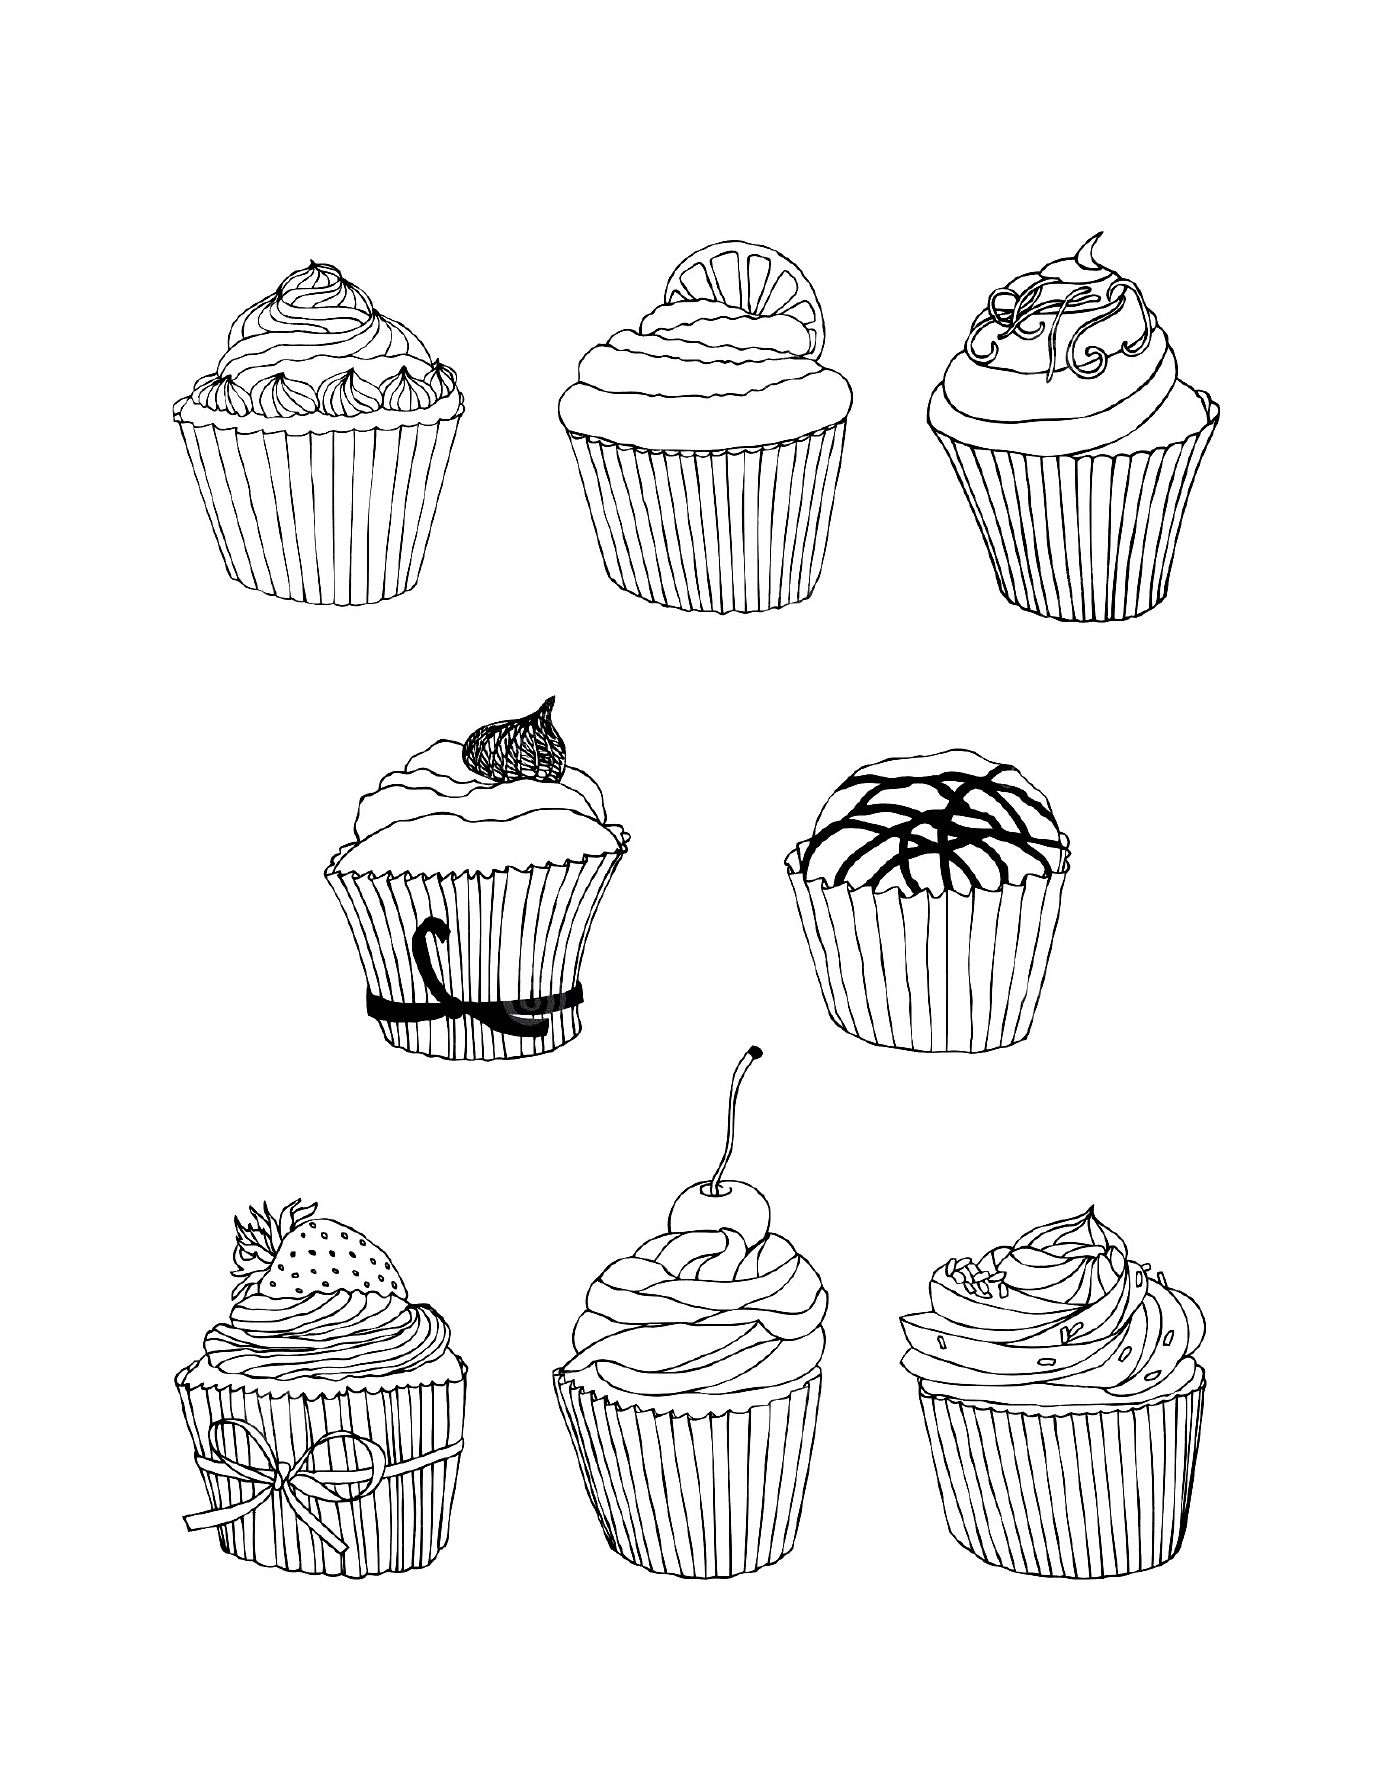   Des cupcakes gratuits dessinés 